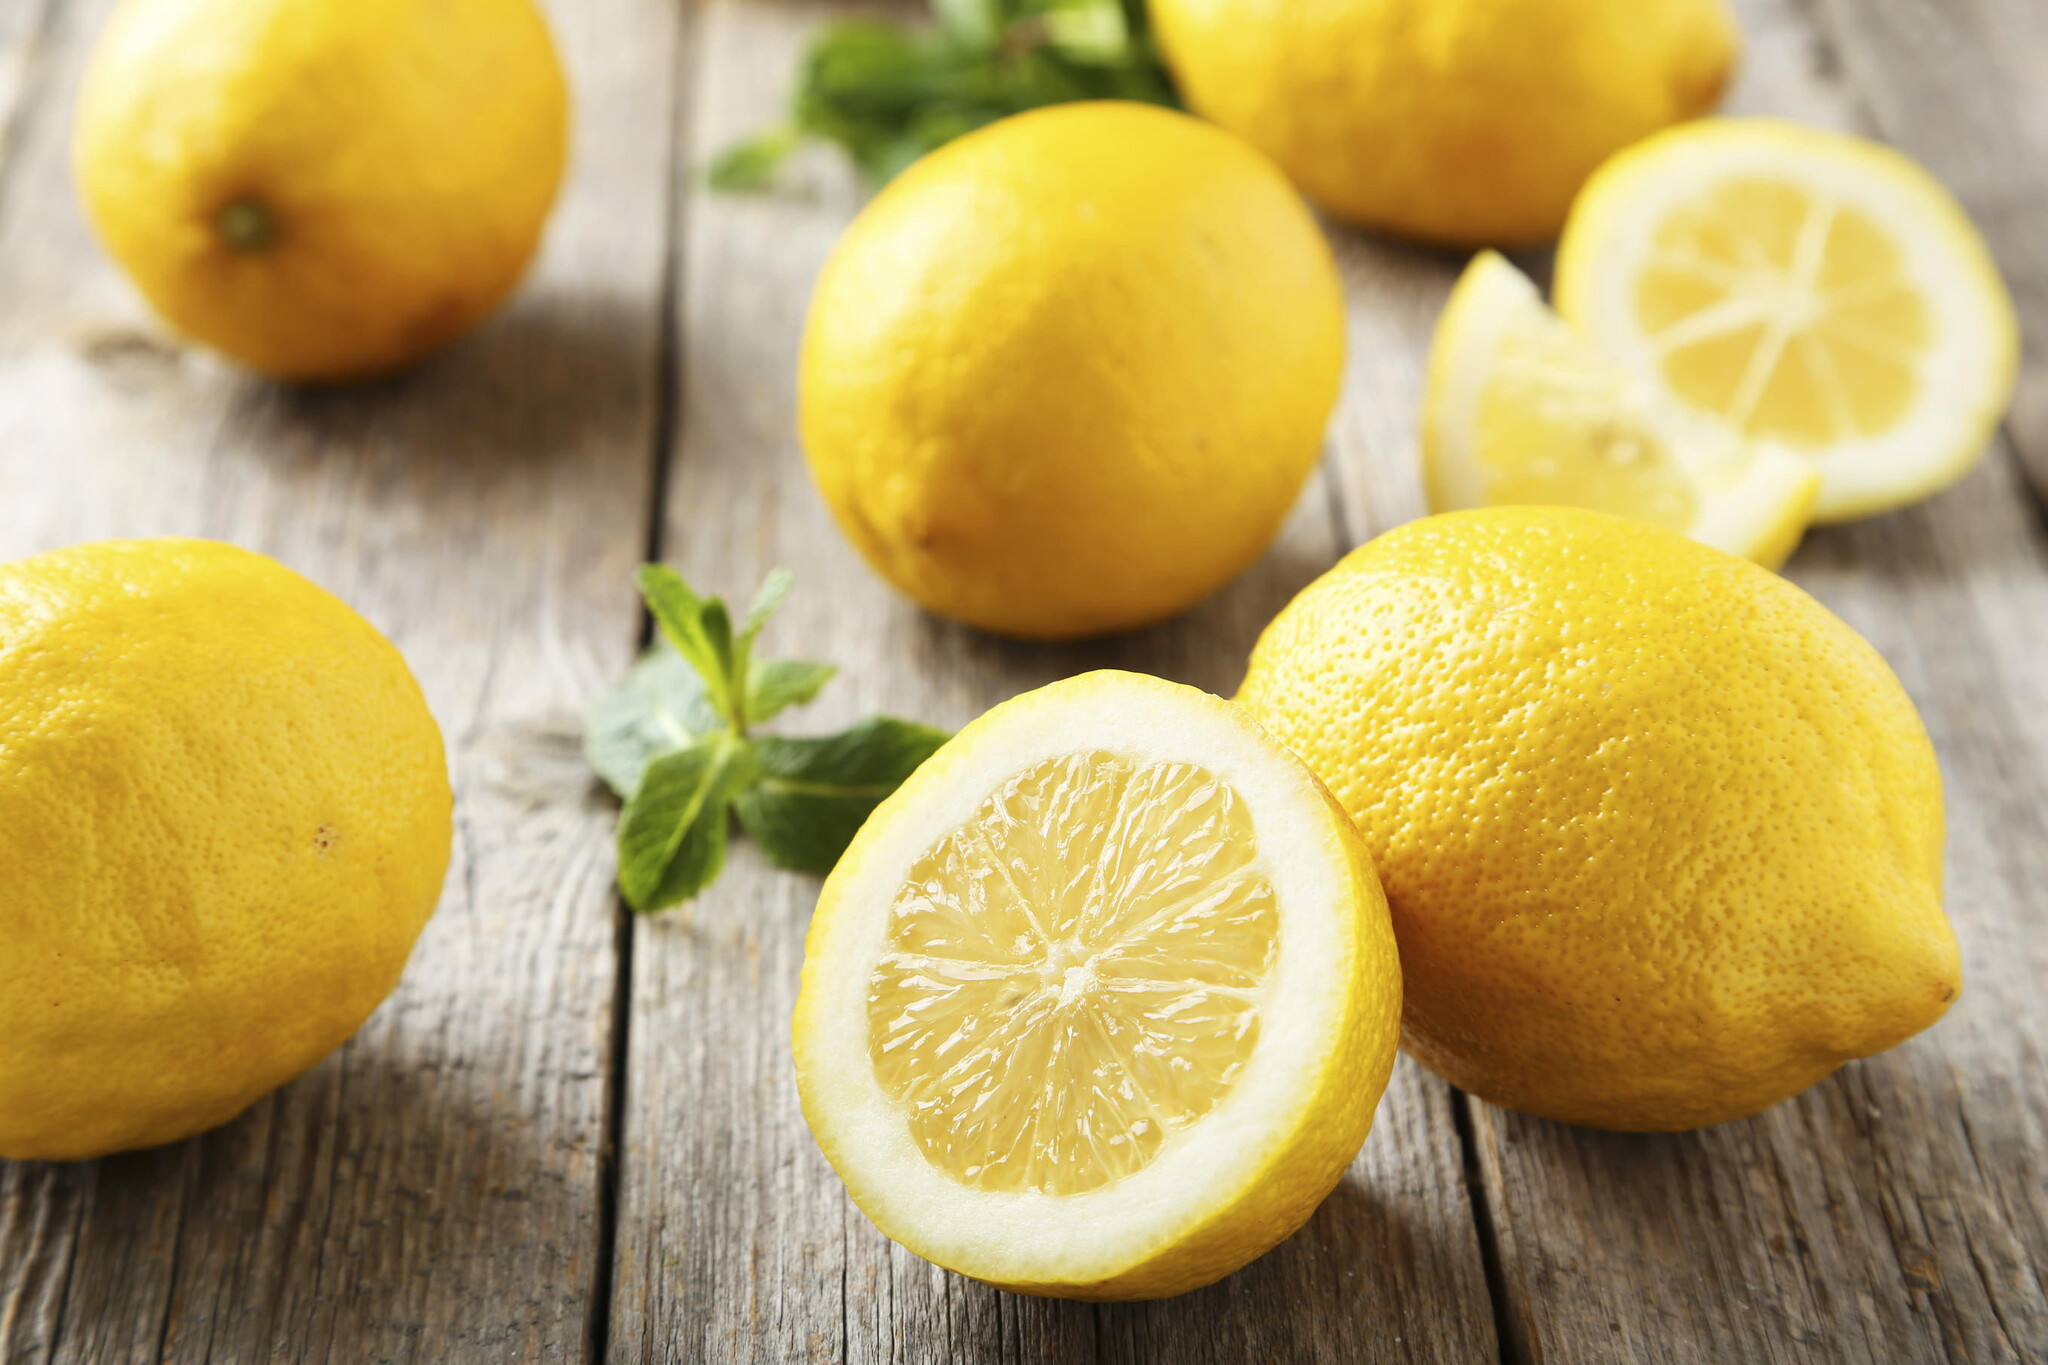 Citrus Limon - Citronnier - Pot 14cm - Hauteur 40-45cm - FloraStore